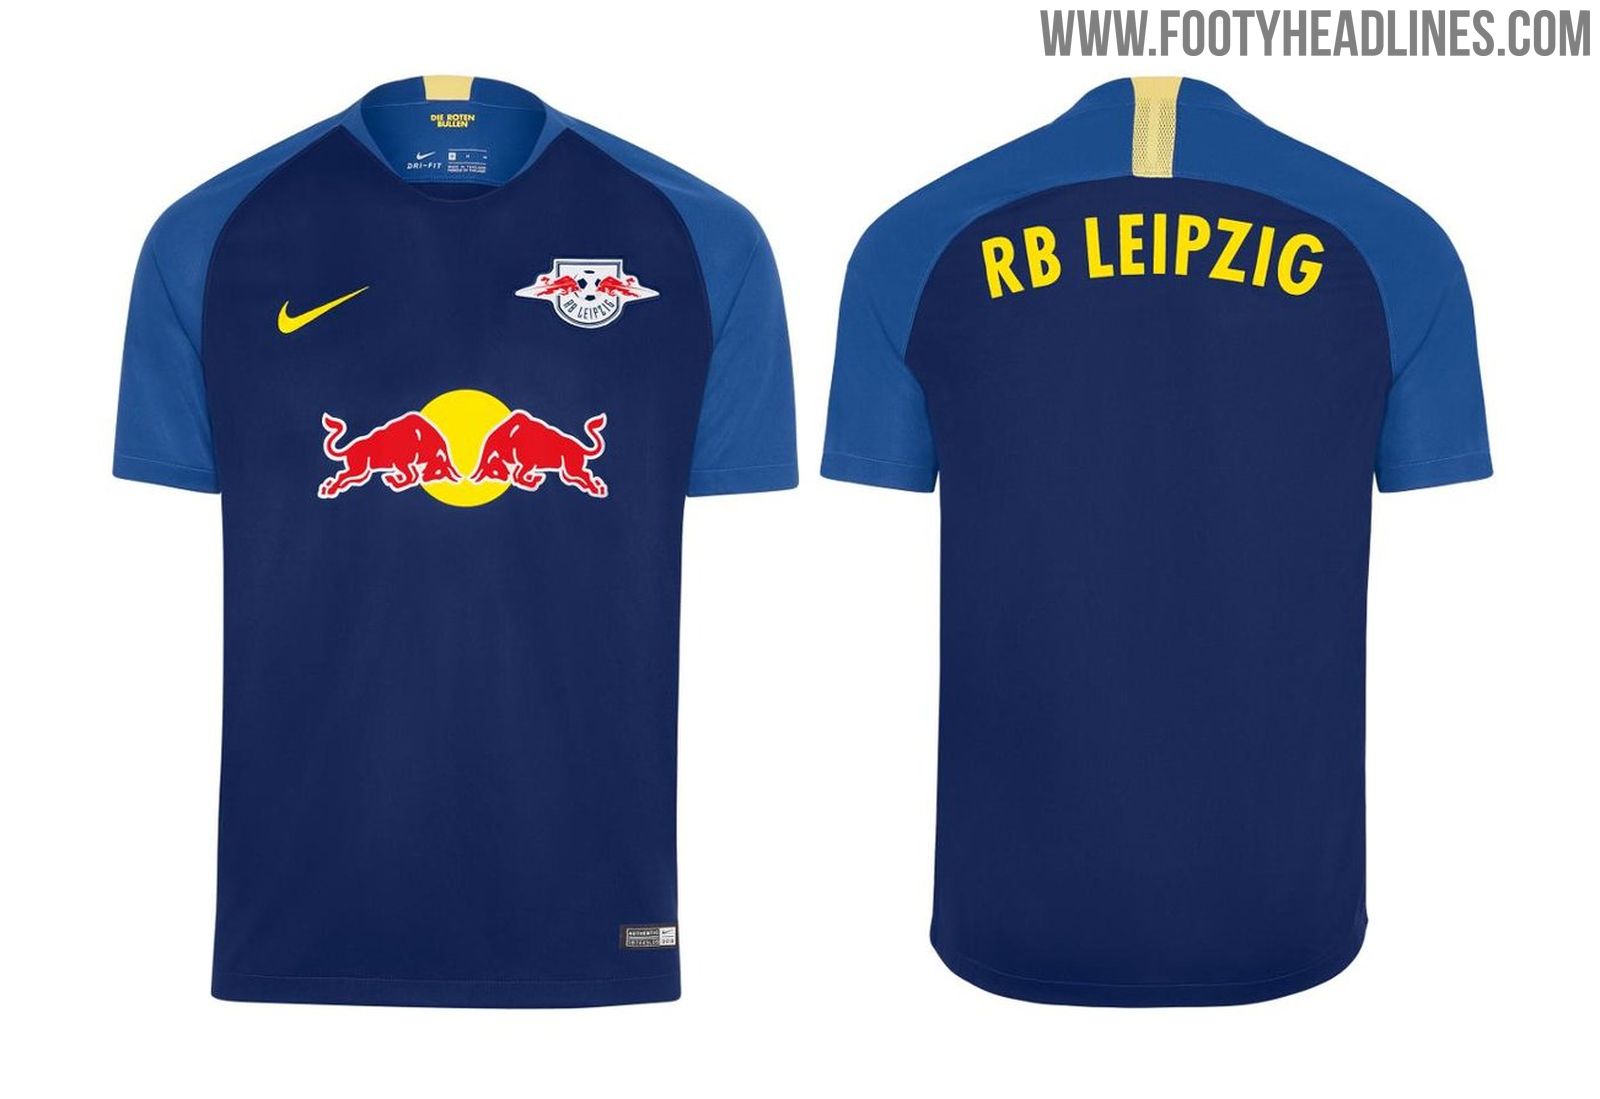 Nike RB Leipzig 20-21 Home Kit Released + Away Kit Colors - New Nike Elite  Team - Footy Headlines